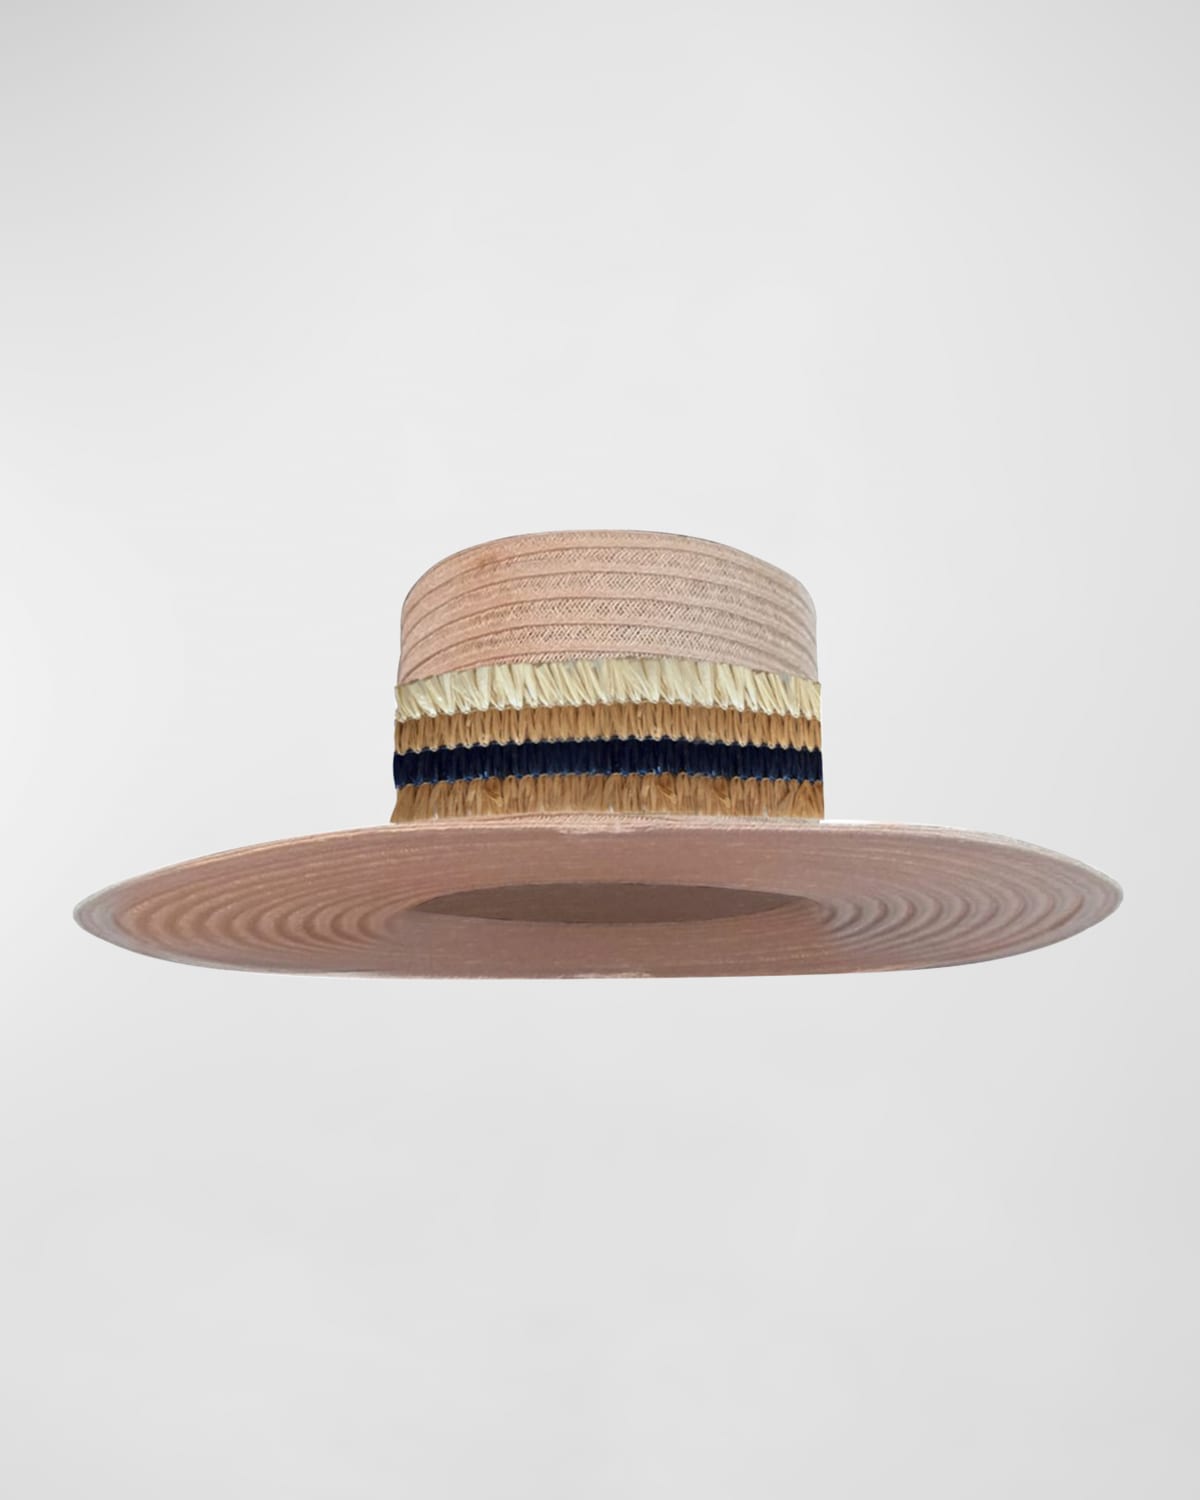 Carre Straw Tall Flat Top Hat